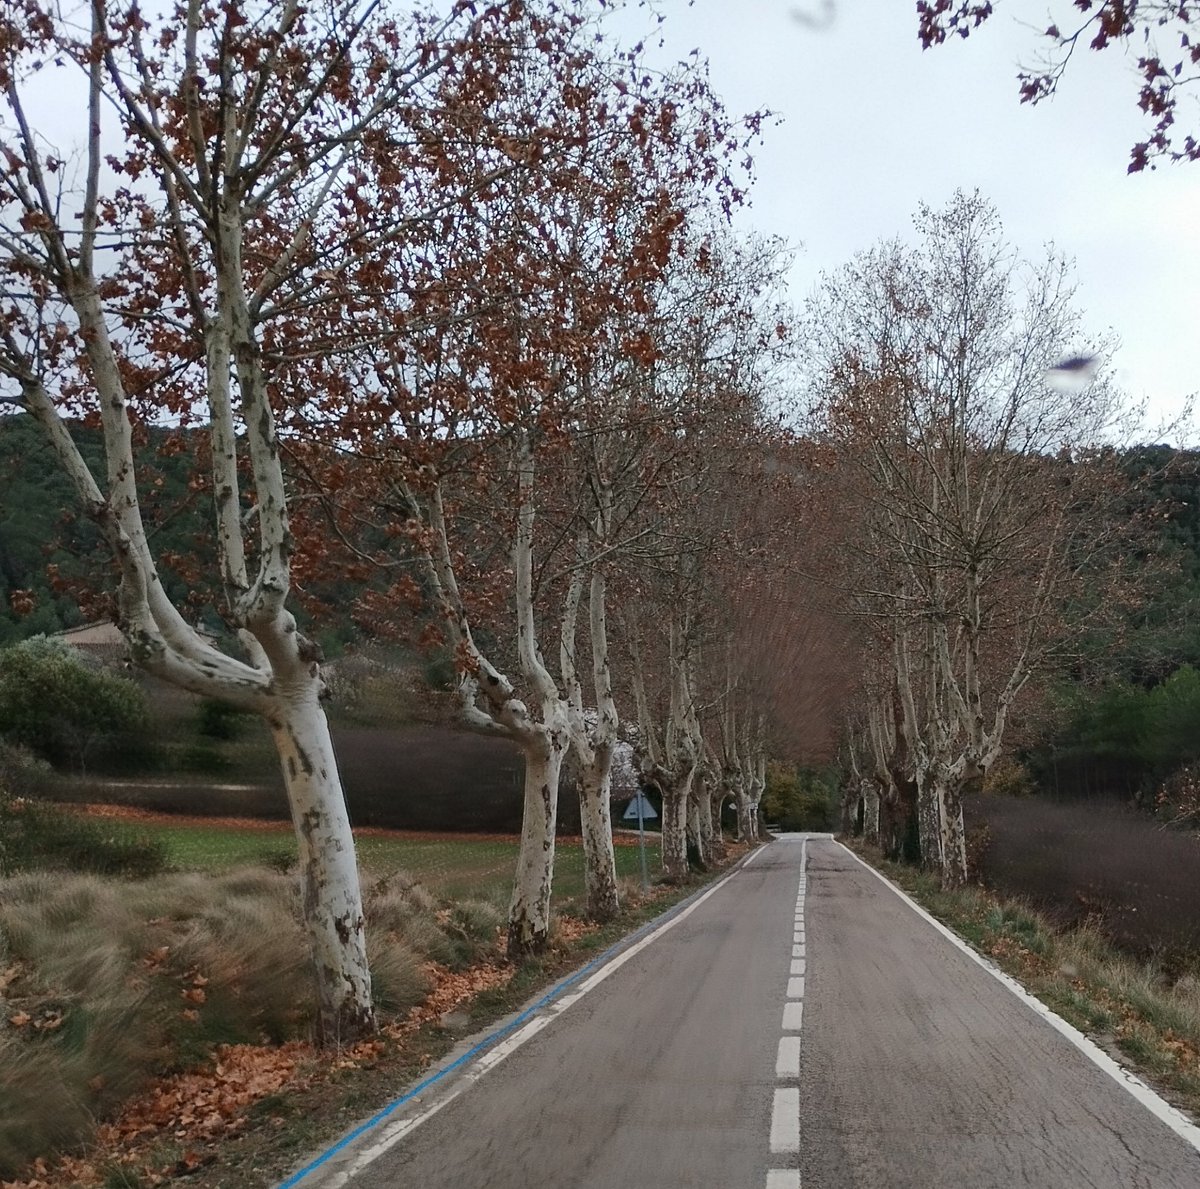 Carretera de #VilafrancaDelPenedès a #SantaColomaDeQueralt.
Encara hi ha força trams amb plataners a banda i banda.
Una carretera 'd'antas'.